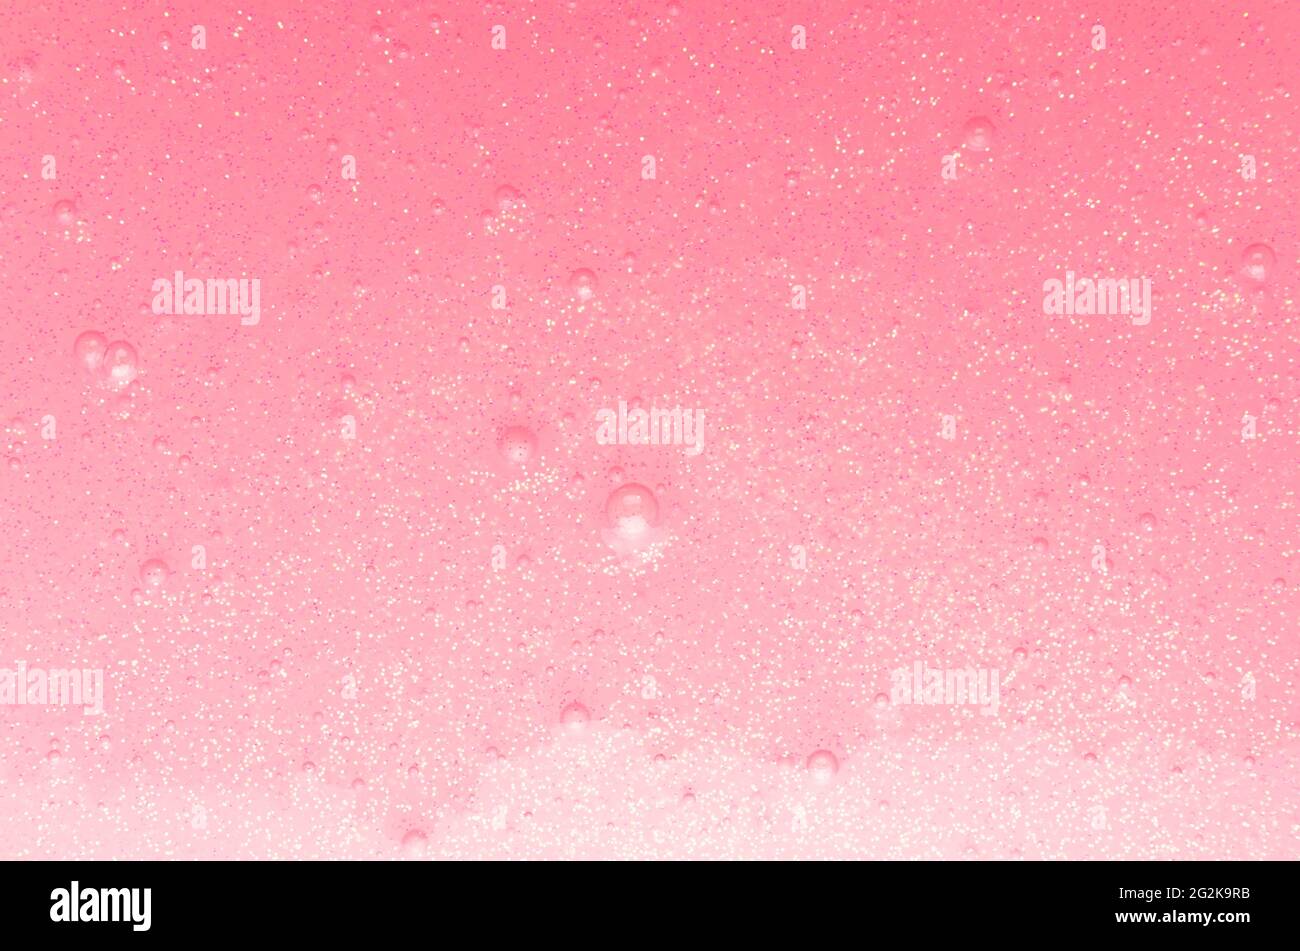 Tenue melma rosa chiaro con glitter oro e piccole bolle texture con gradiente, astratto sfondo girish. Foto Stock